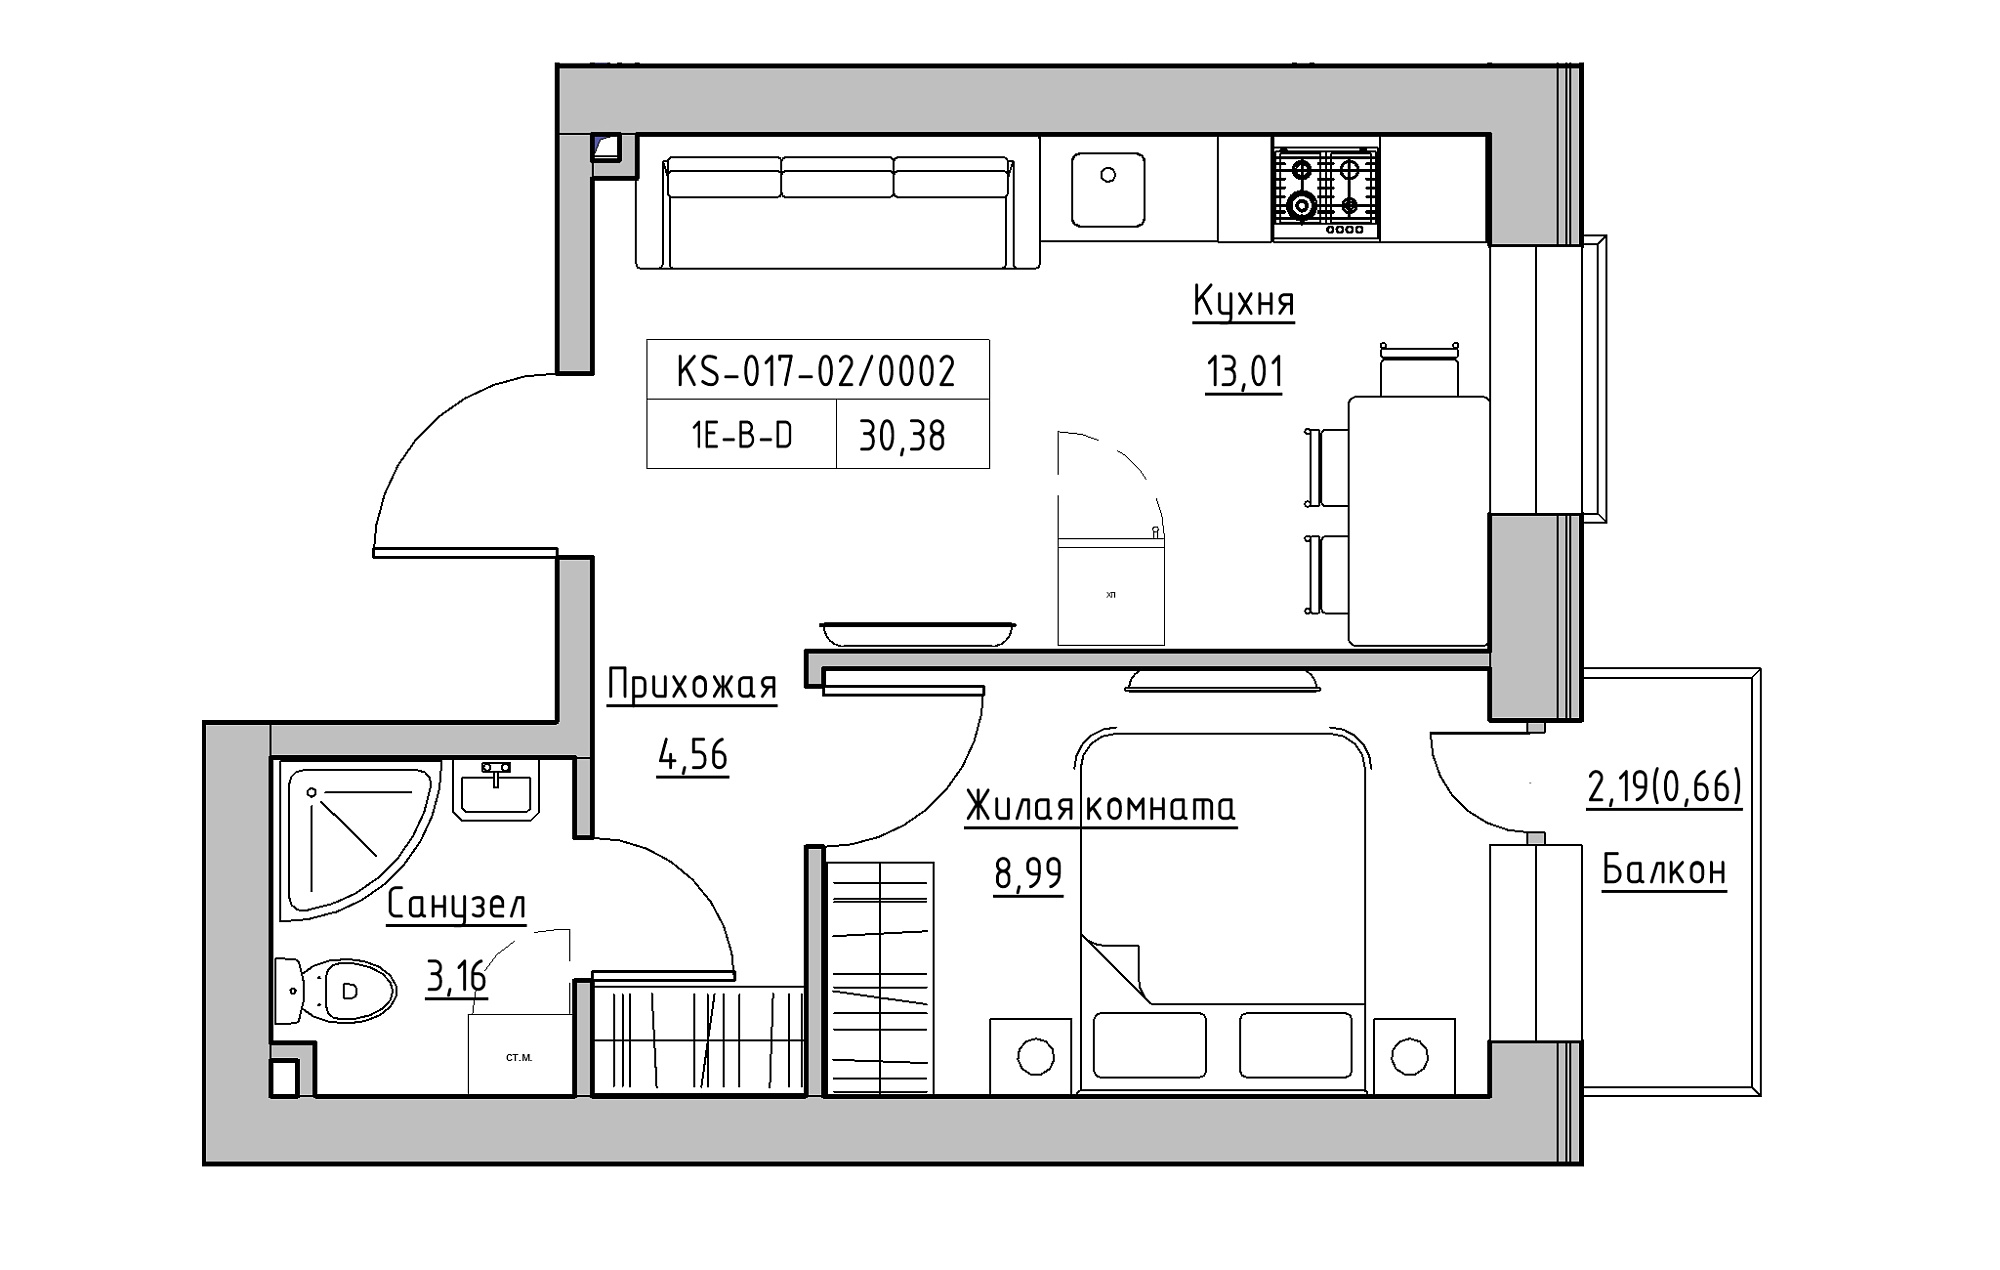 Планировка 1-к квартира площей 30.38м2, KS-017-02/0002.